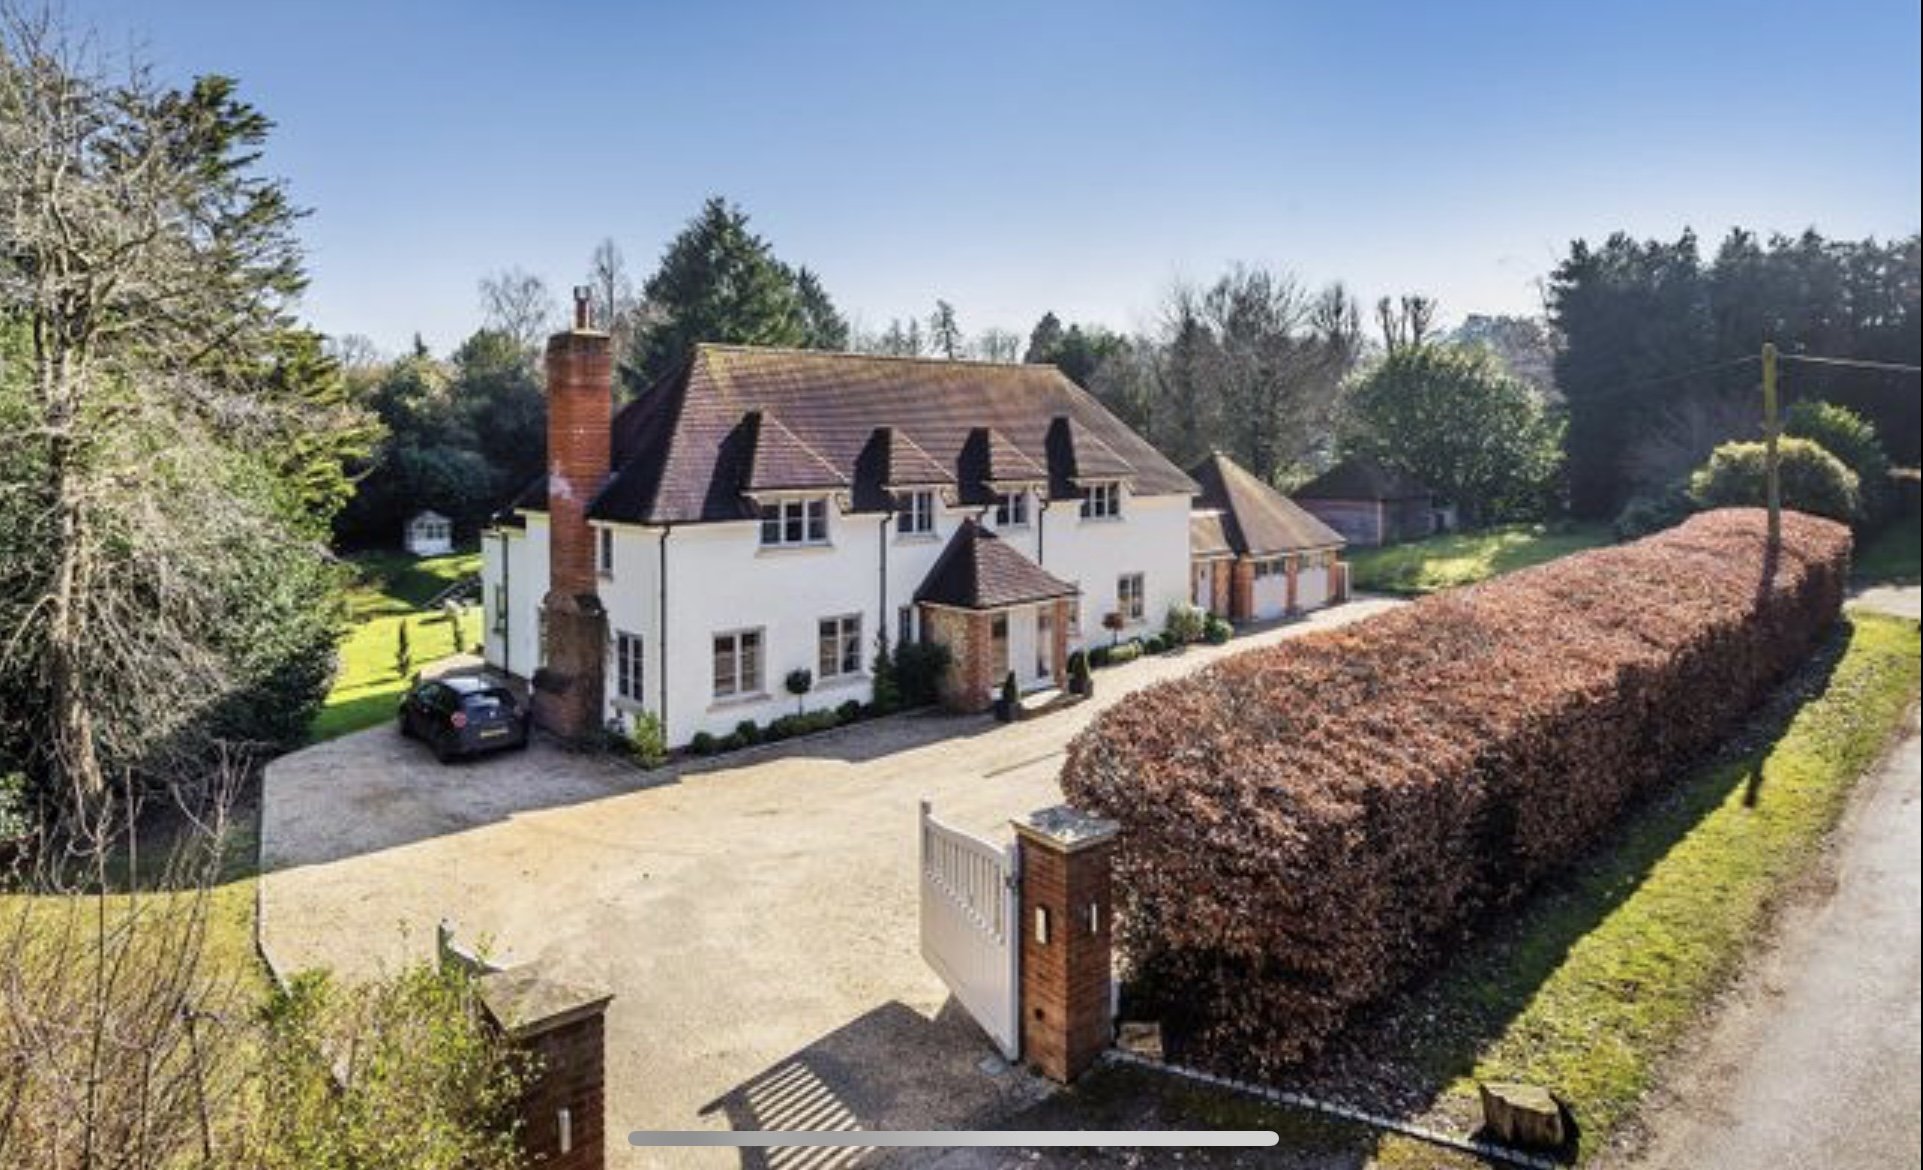 Yew Villa, Surrey, SouthCoast LocationFinder